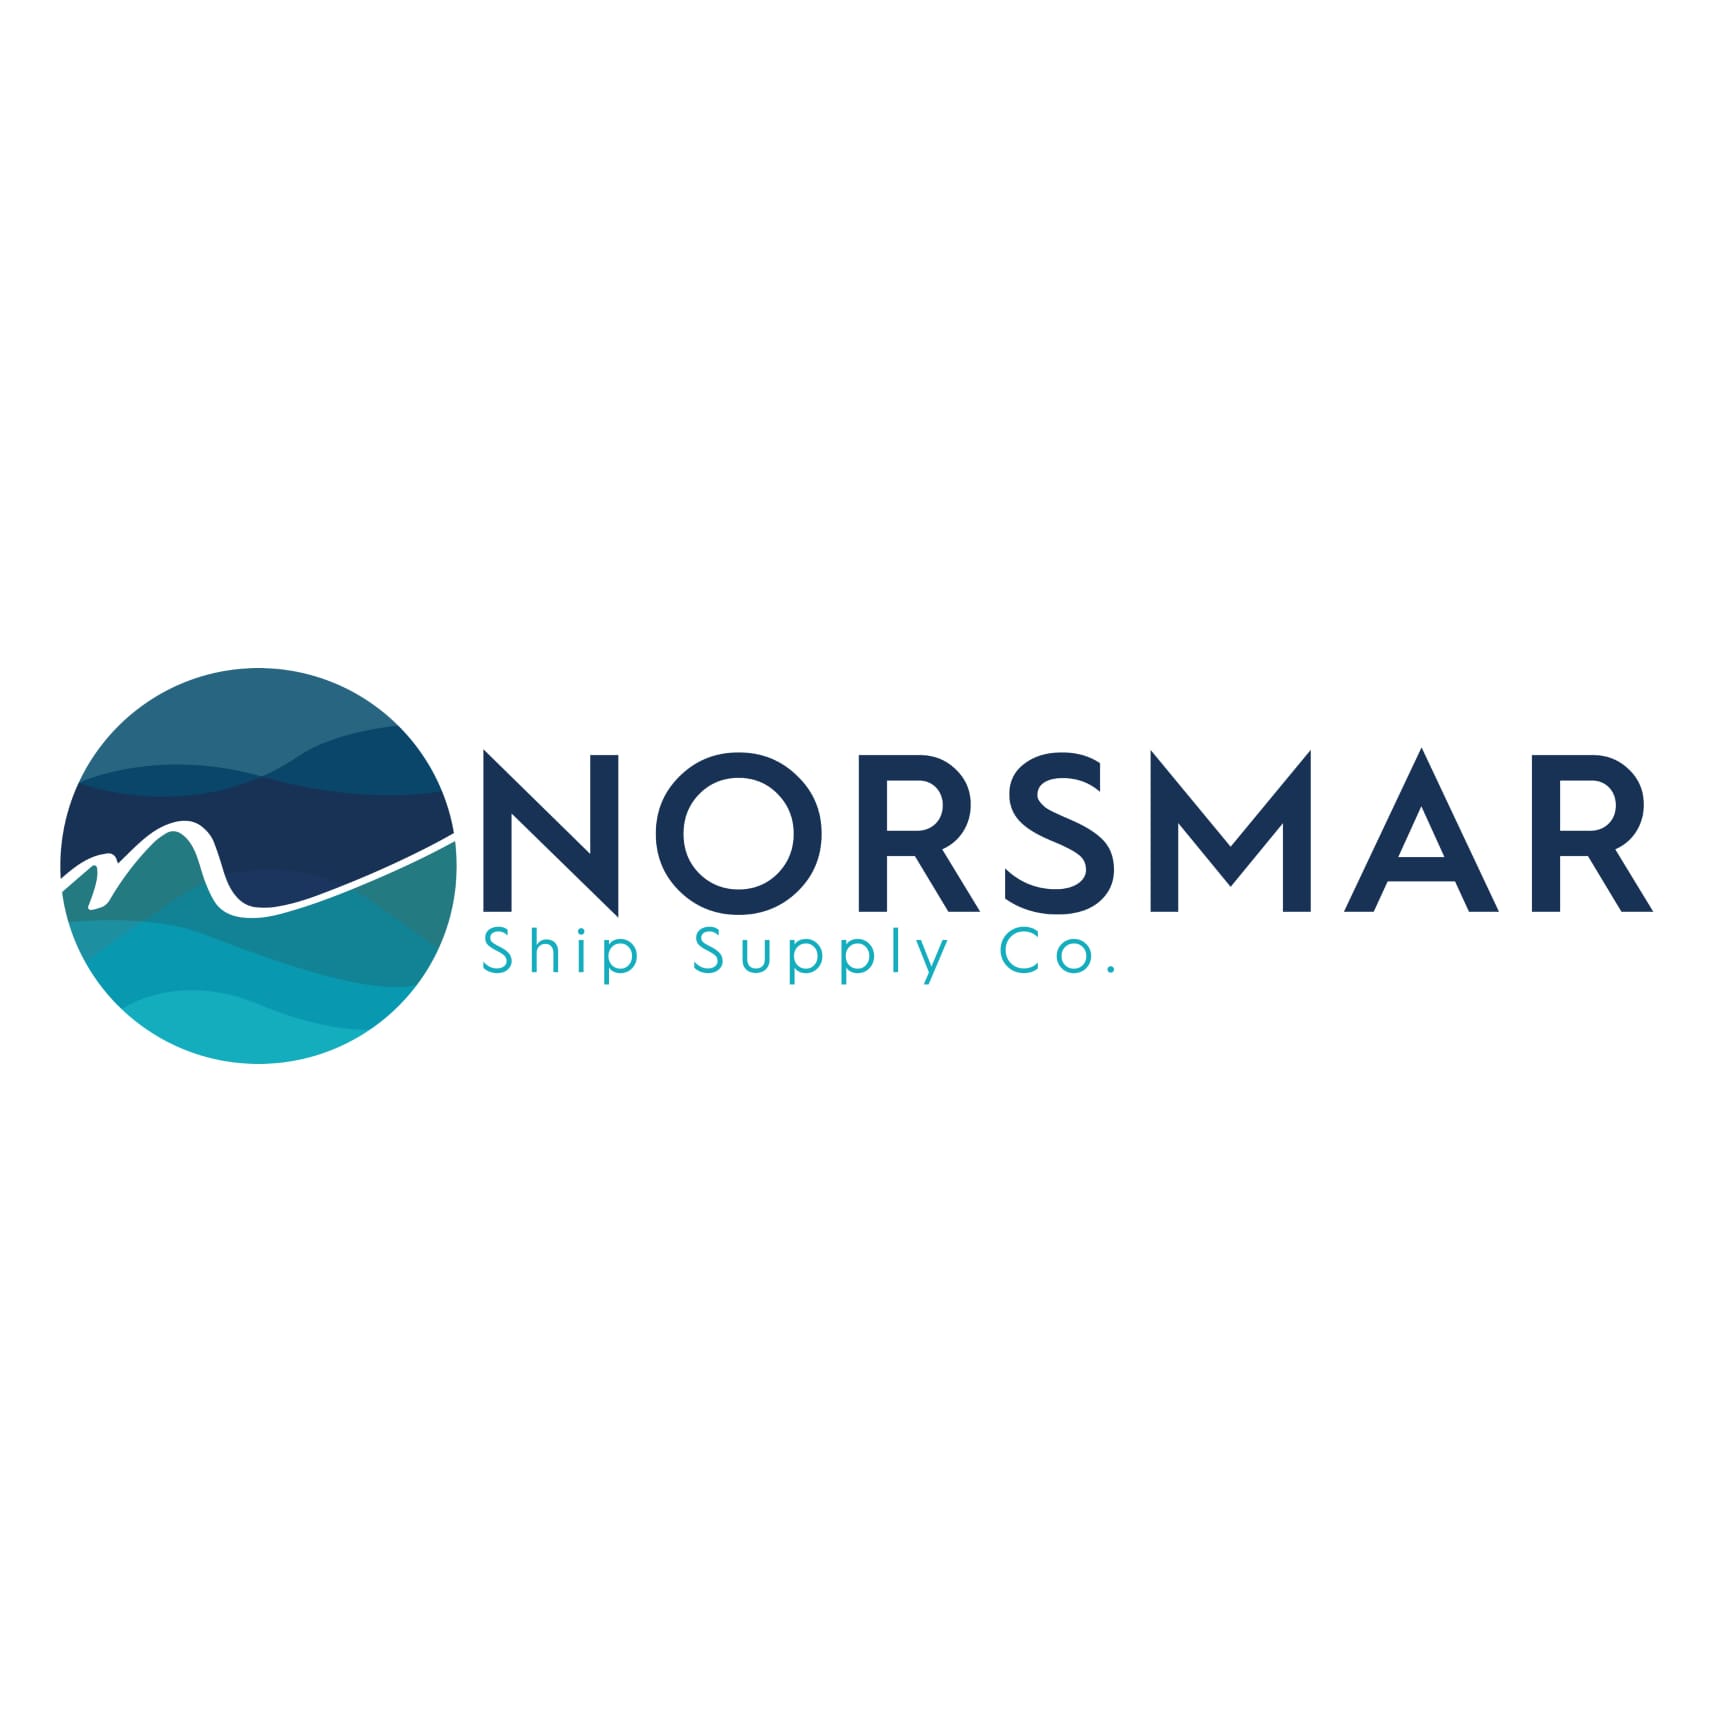 Norsmar: Denizcilikte Yenilikçi Çözümler Sunuyoruz